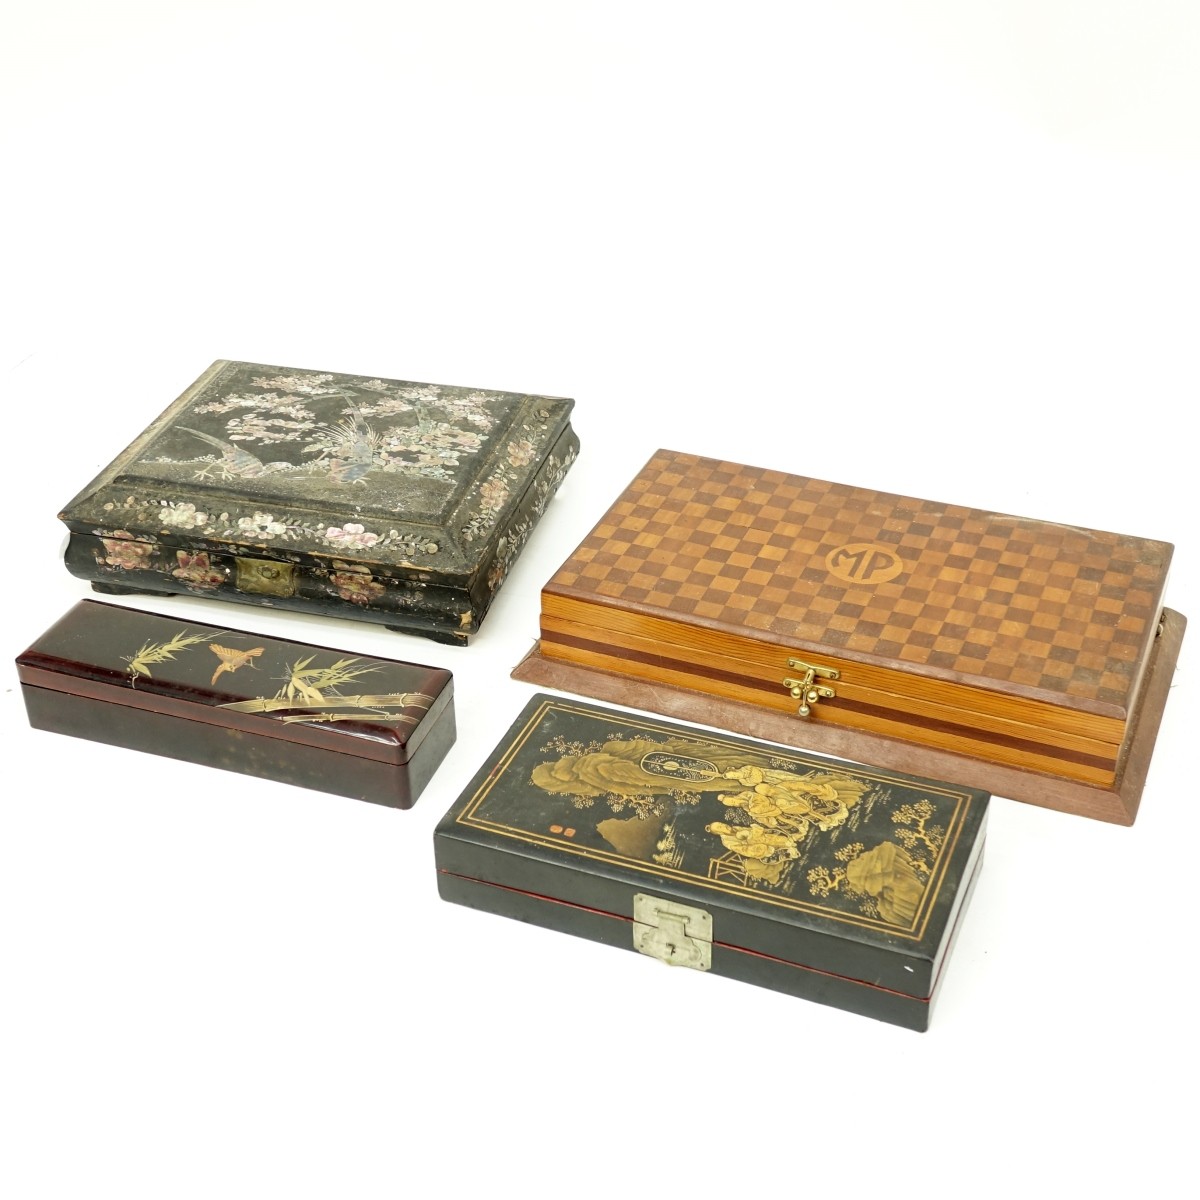 Four Vintage Wooden Boxes